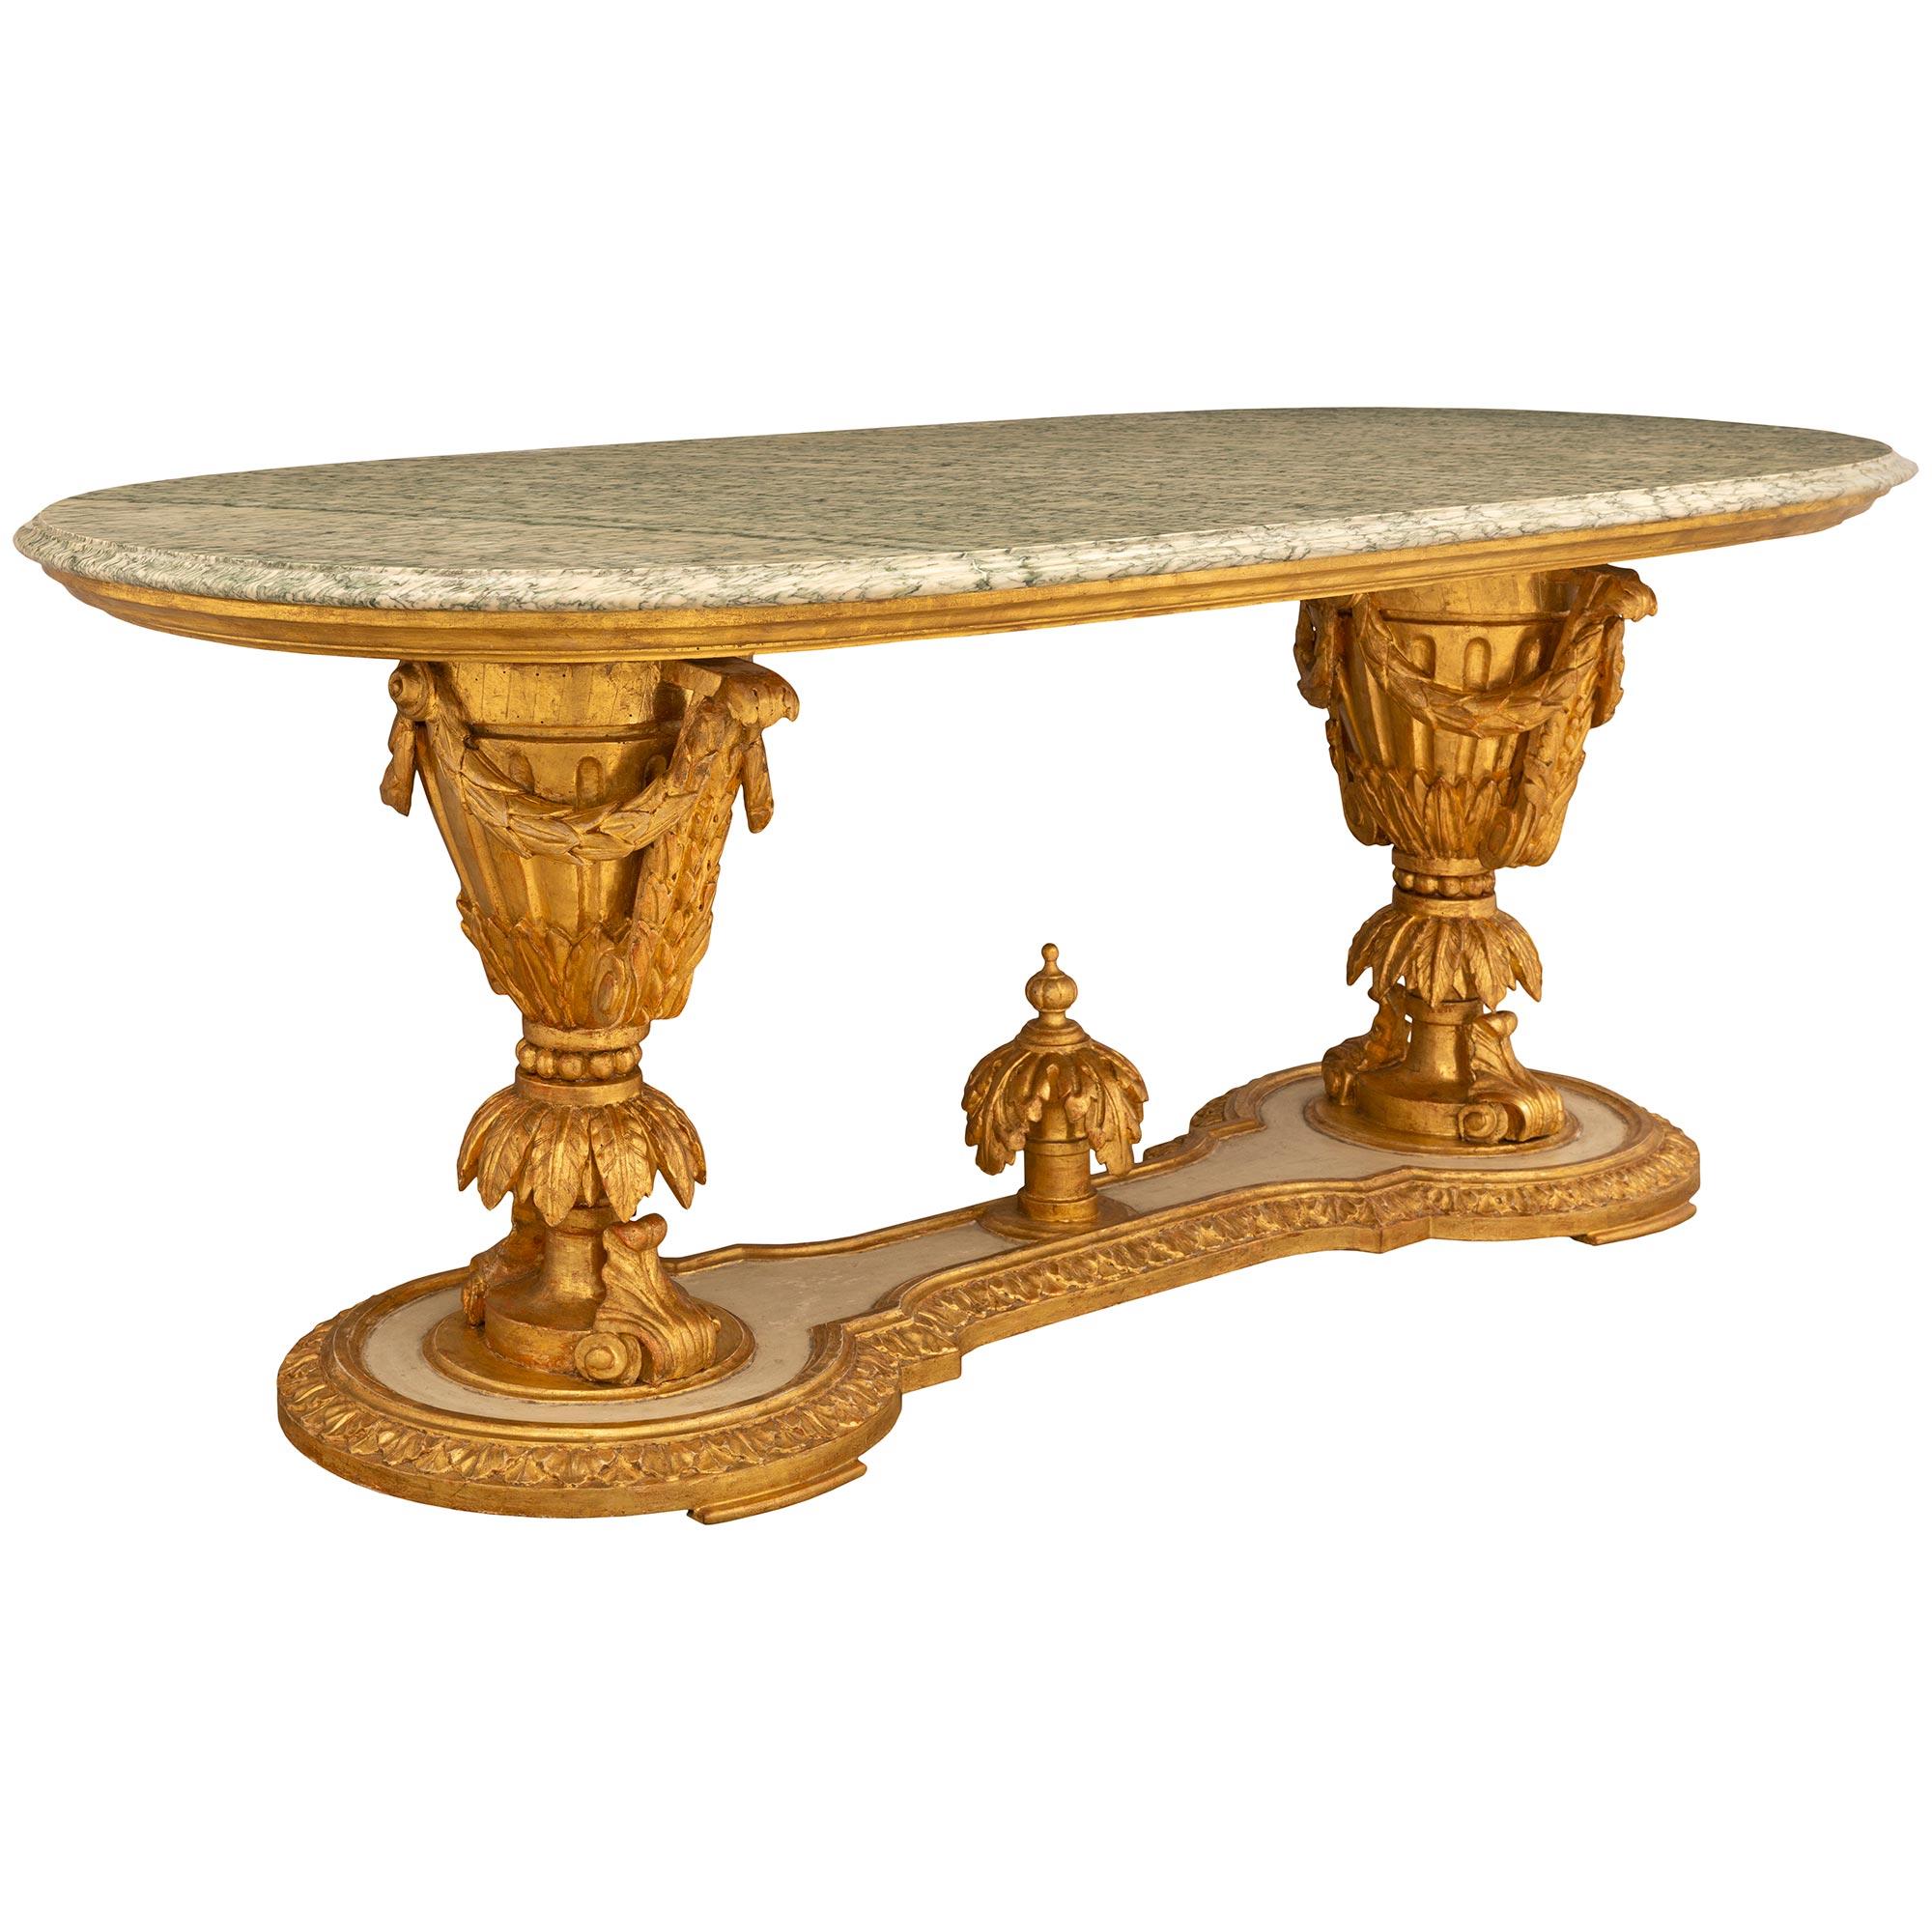 Une étonnante et très unique table centrale italienne du 19ème siècle de style Louis XVI en bois patiné, doré et Vert Campan. La table centrale oblongue est surélevée par une base des plus décoratives, aux pieds finement marbrés, sous le gradin